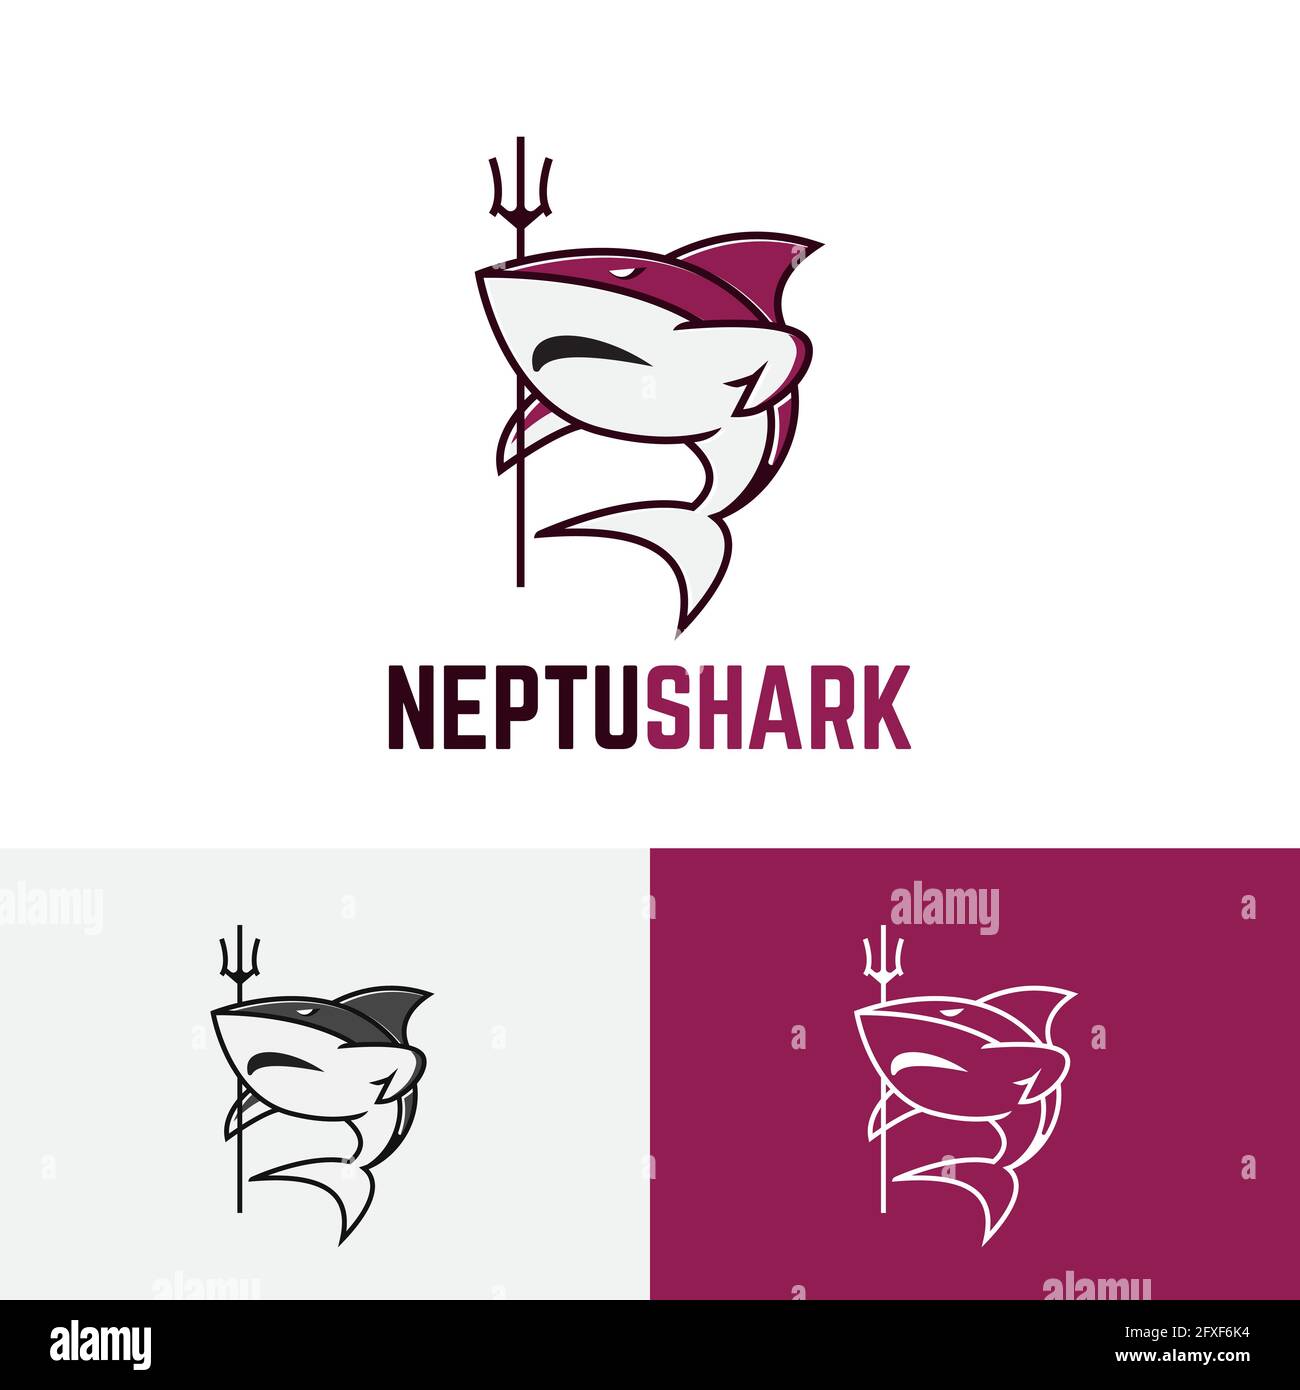 Forte Nettuno Shark pesce Mare Re Trident logo Illustrazione Vettoriale